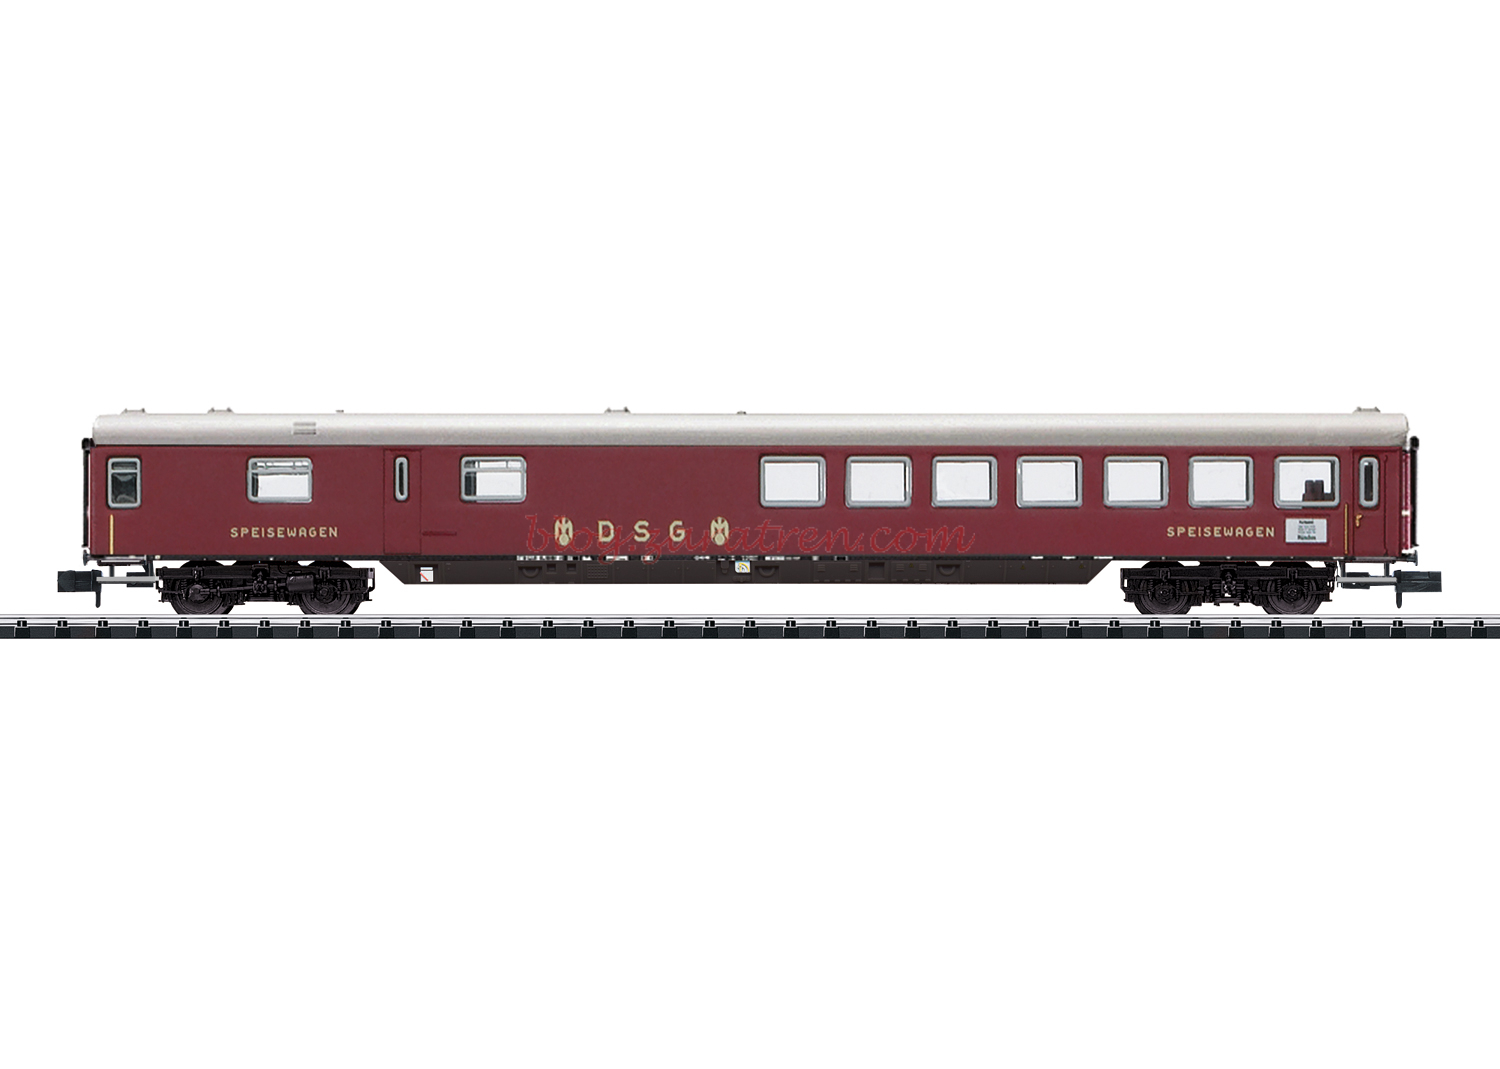 Minitrix – Coche comedor Tren Expreso DSG, Epoca III, Escala N, Ref: 18402.